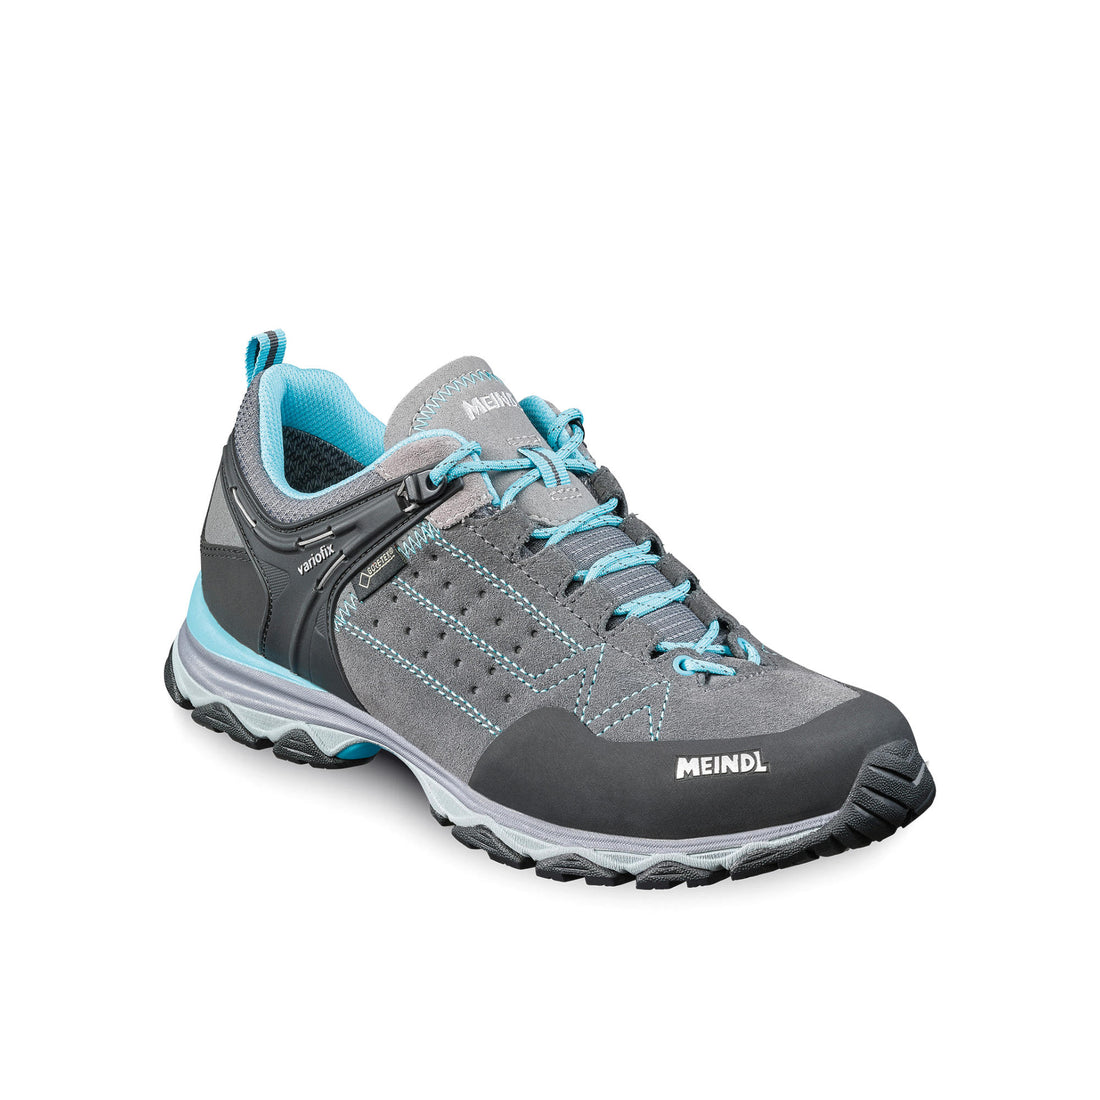 Meindl Ladies Ontario GTX Shoe in Grey/Azure